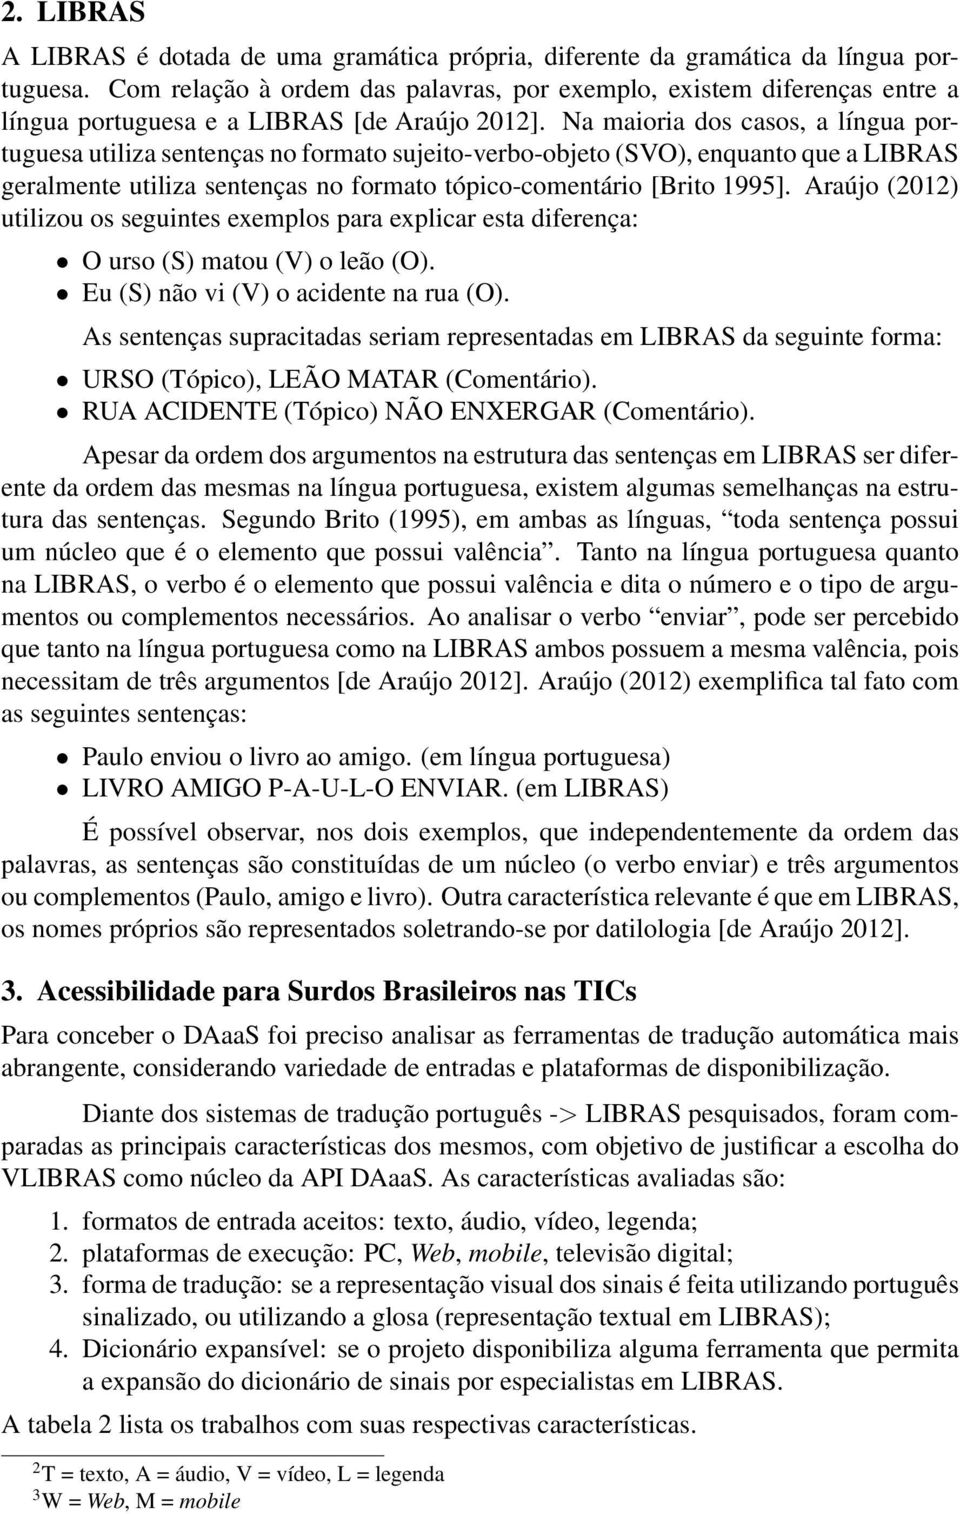 Na maioria dos casos, a língua portuguesa utiliza sentenças no formato sujeito-verbo-objeto (SVO), enquanto que a LIBRAS geralmente utiliza sentenças no formato tópico-comentário [Brito 1995].